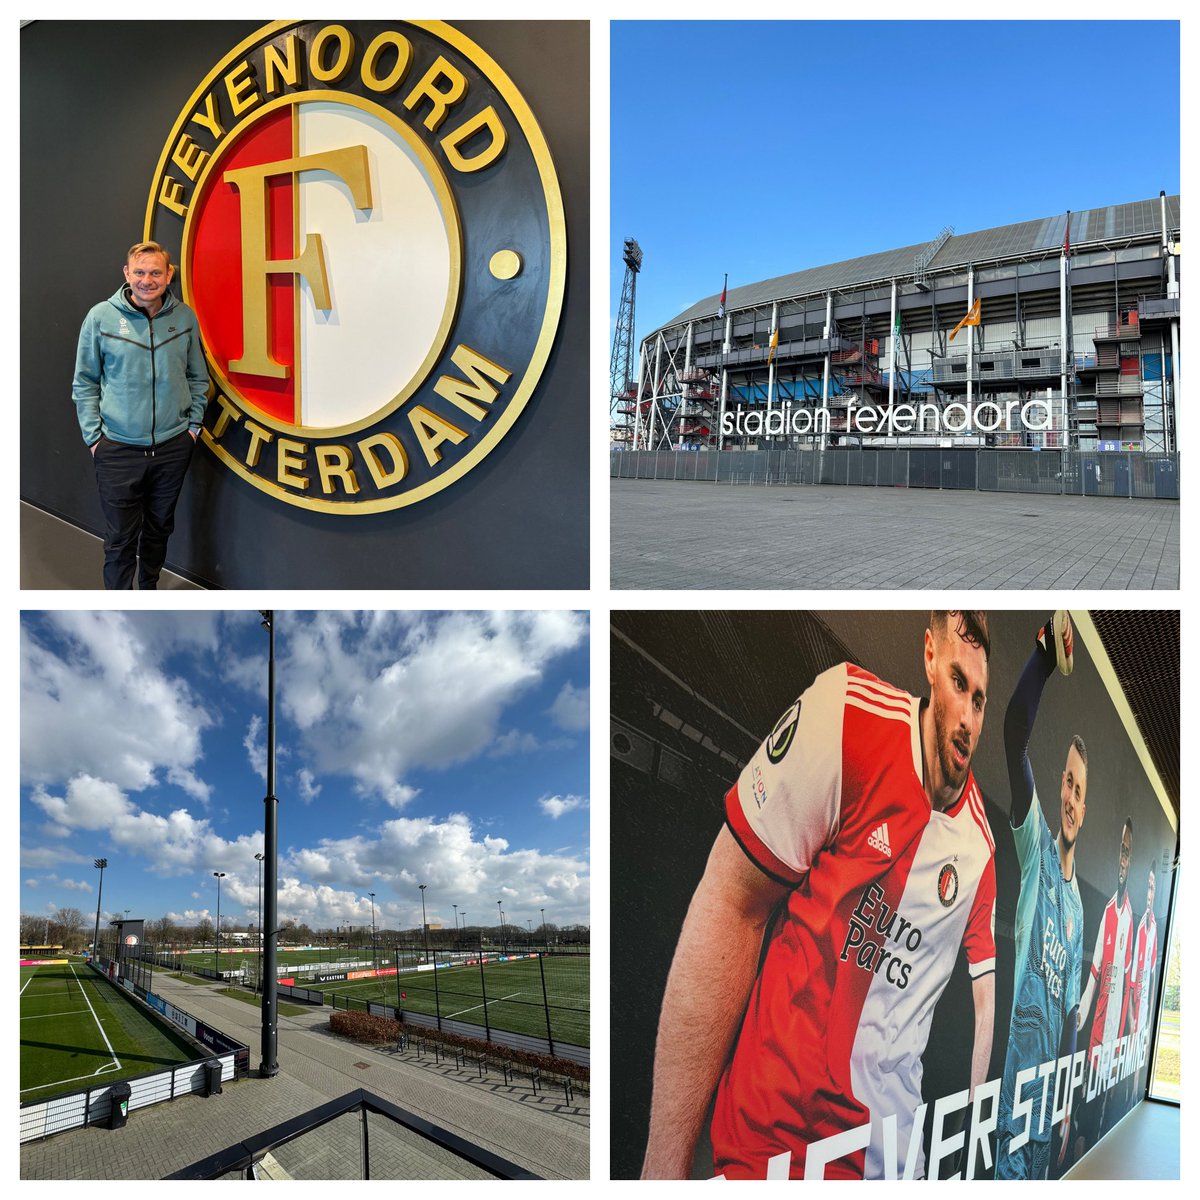 Drugi dzień kursu,tym razem w @Feyenoord 👍🏻 Dużo ciekawych wniosków wywiozę z klubu w którym Polscy piłkarze radzili sobie świetnie 😉💪